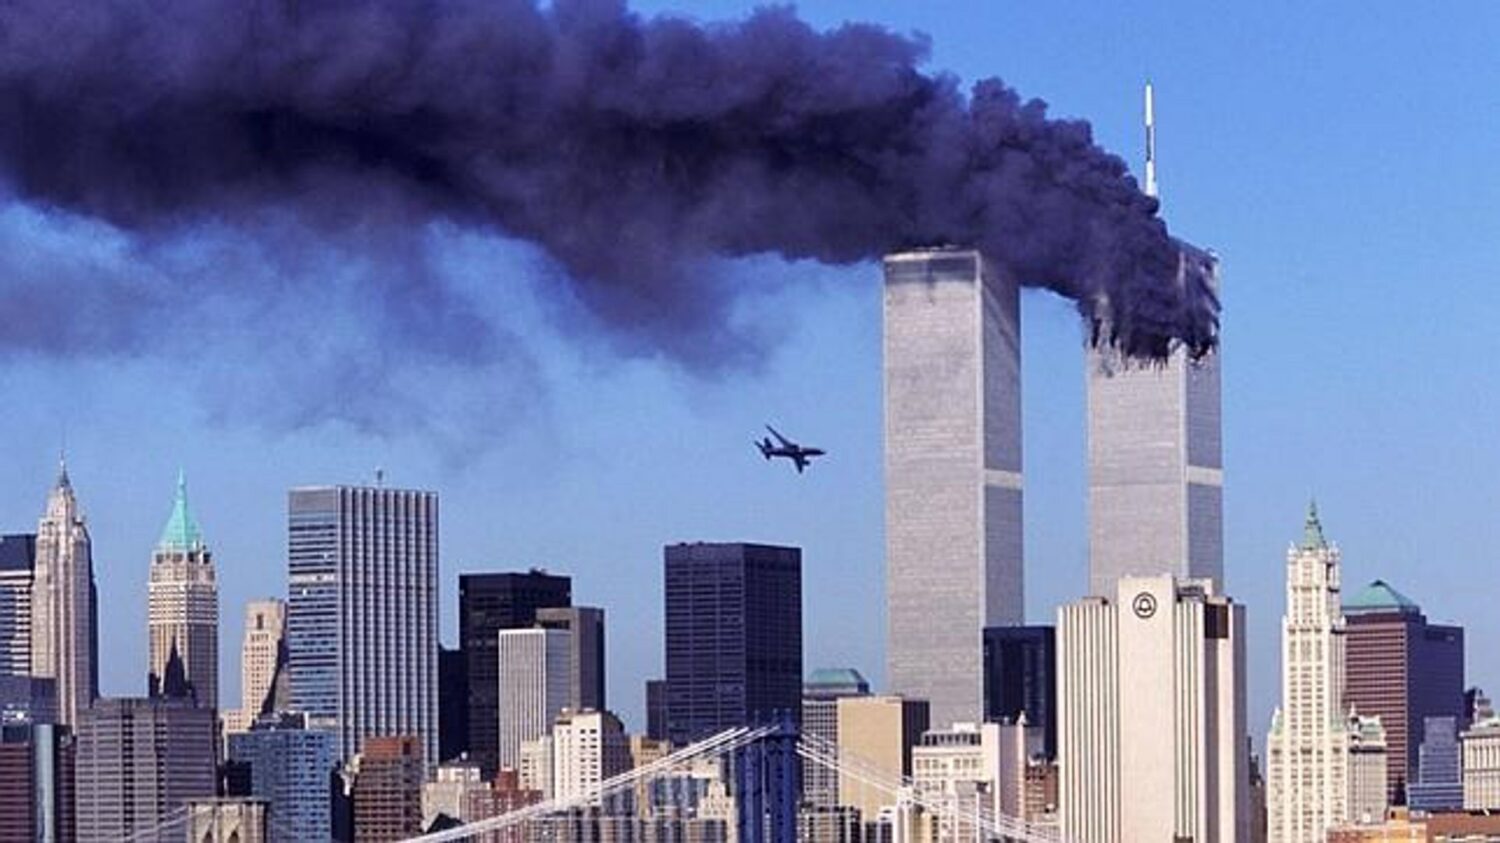 11η Σεπτεμβρίου: Ο "Πύργος της Ελευθερίας" που αντικατέστησε τους Δίδυμους Πύργους